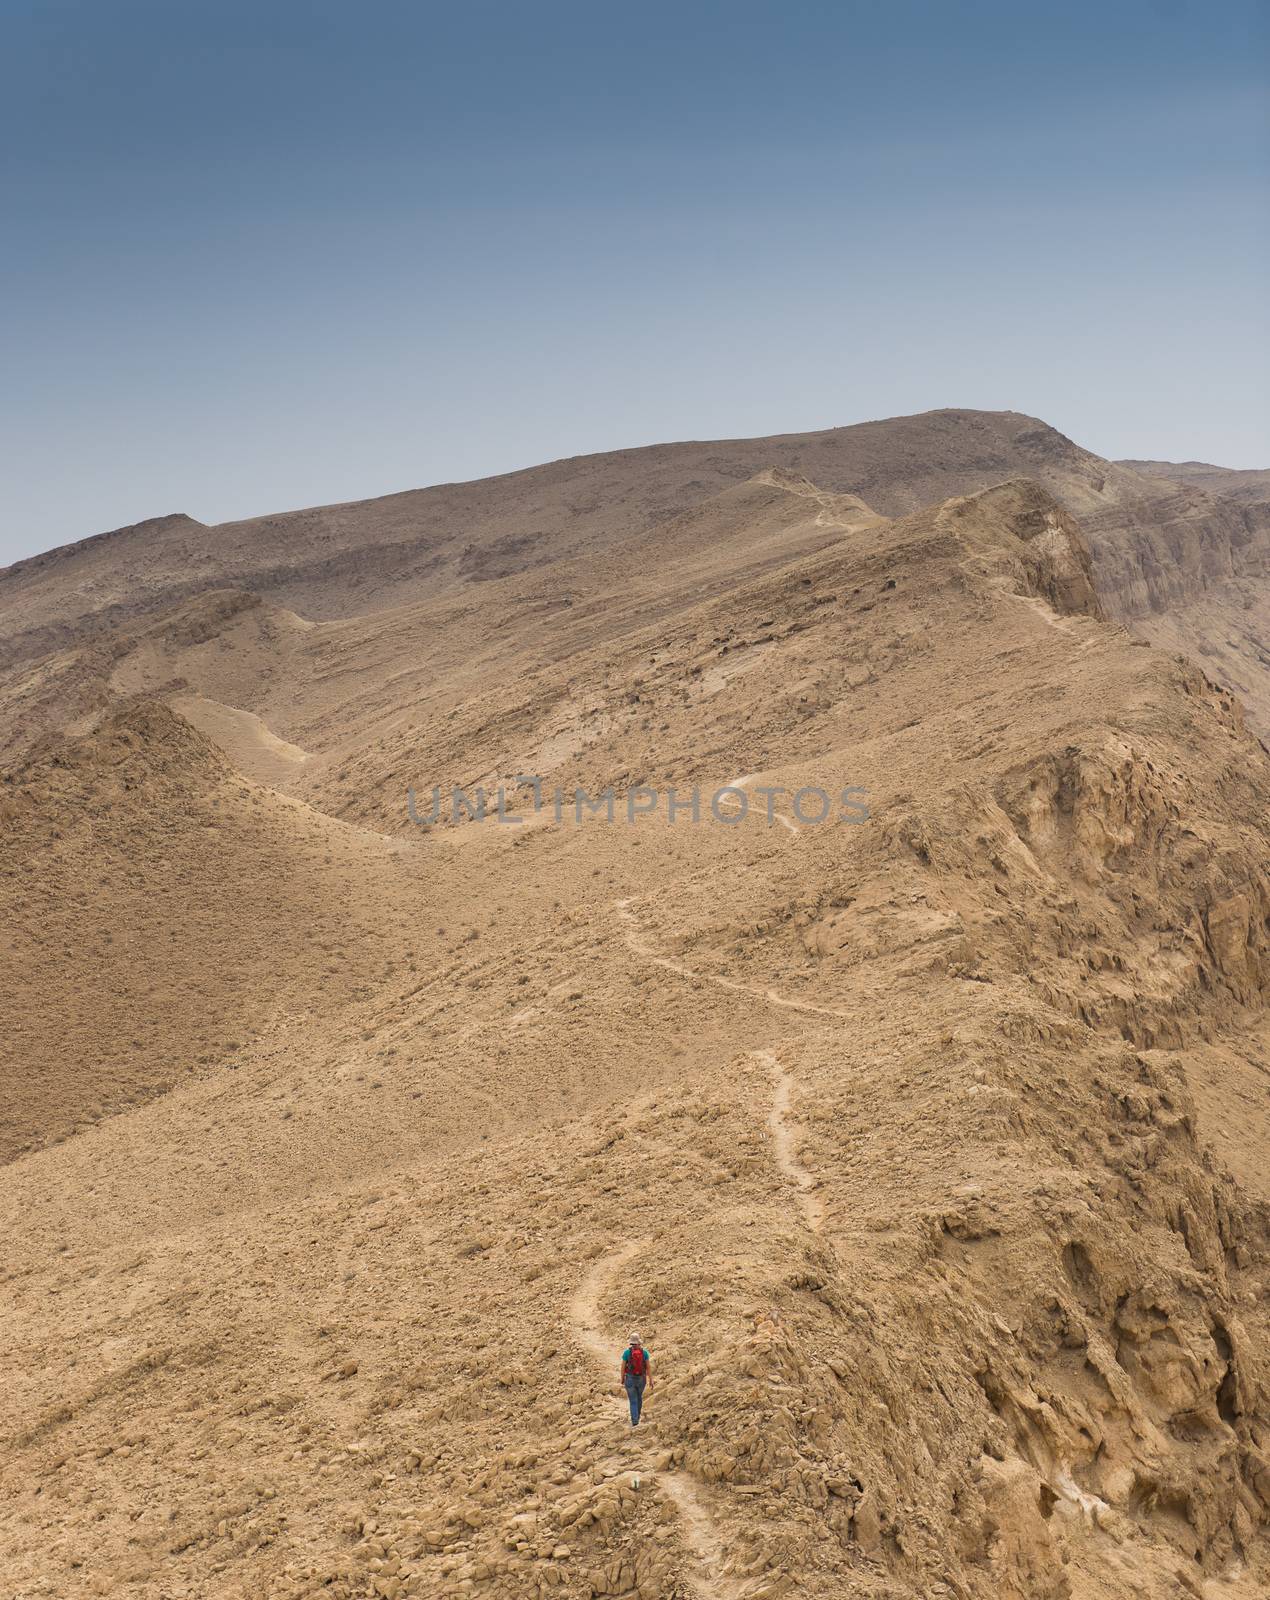 Hiking in israeli stone desert by javax